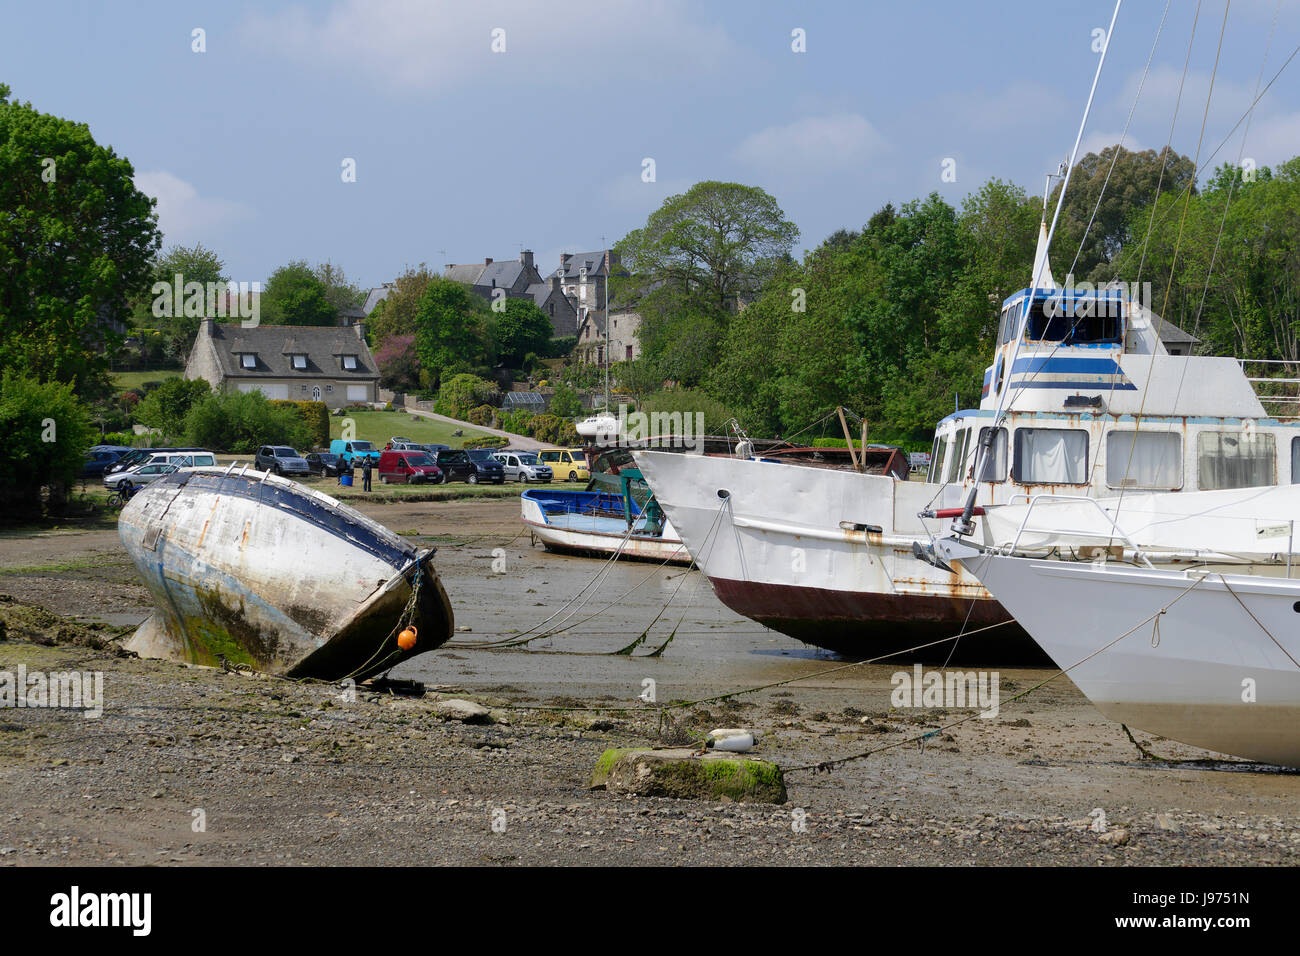 Bateaux échoués à marée basse sur la rive à Minihic-sur-Rance (Rance, l'Ille et Vilaine, Bretagne, France). Banque D'Images